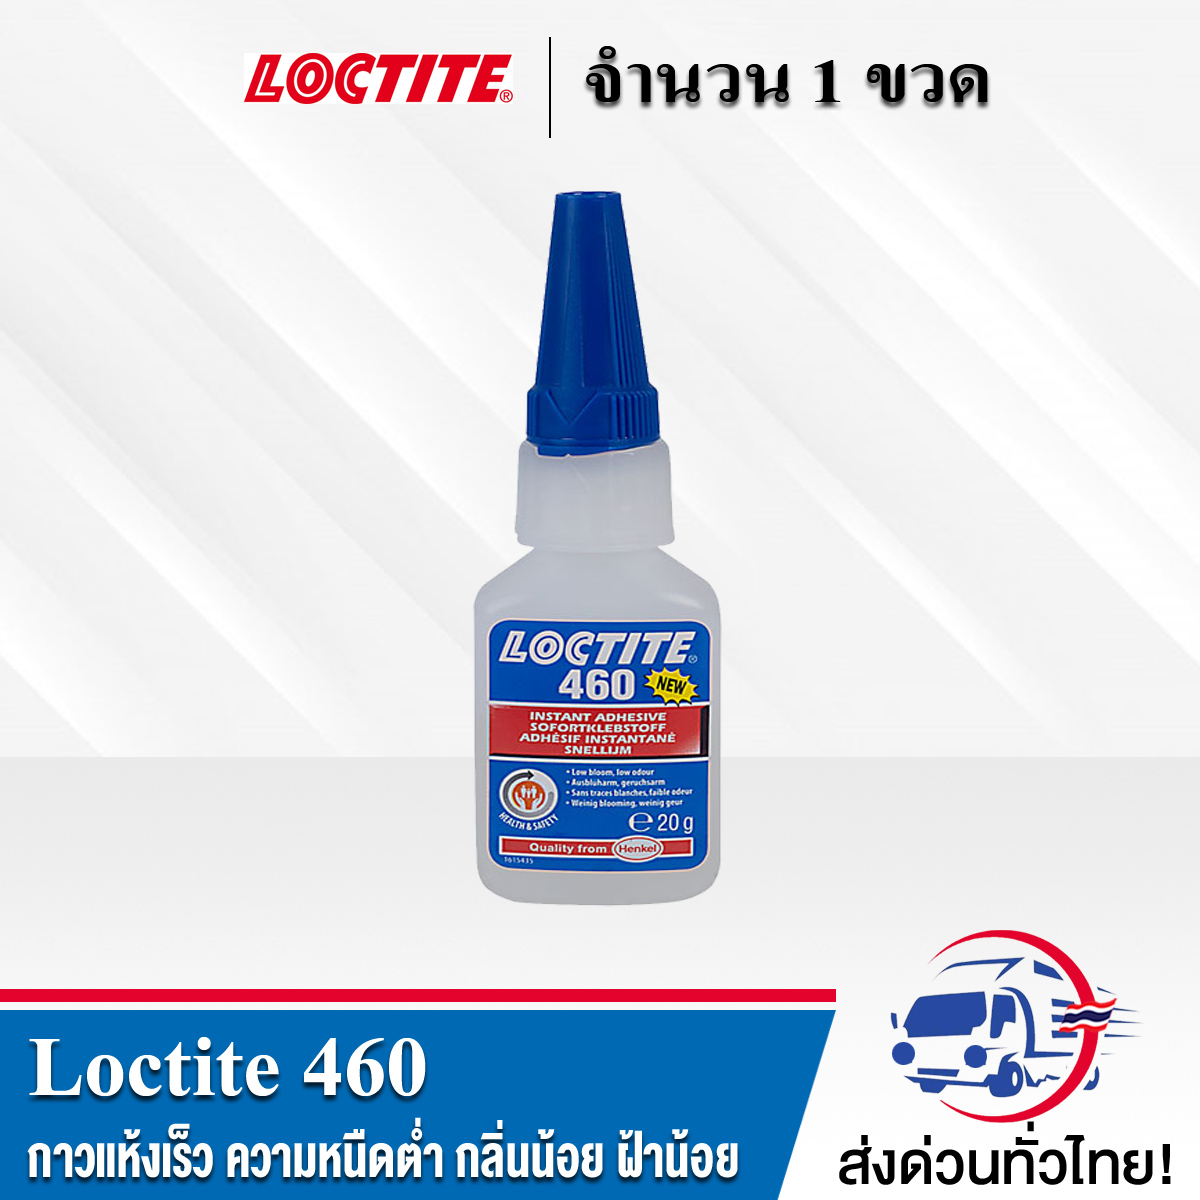 LOCTITE 460 Instant Adhesives กาวแห้งเร็ว ความหนืดต่ำ กลิ่นน้อย ฝ้าน้อย สูตรพิเศษทำขึ้นเพื่อใช้ในการประกอบให้ดูสวยงาม และให้ความแข็งแรงได้ตามต้องการ ขนาด 20 g.